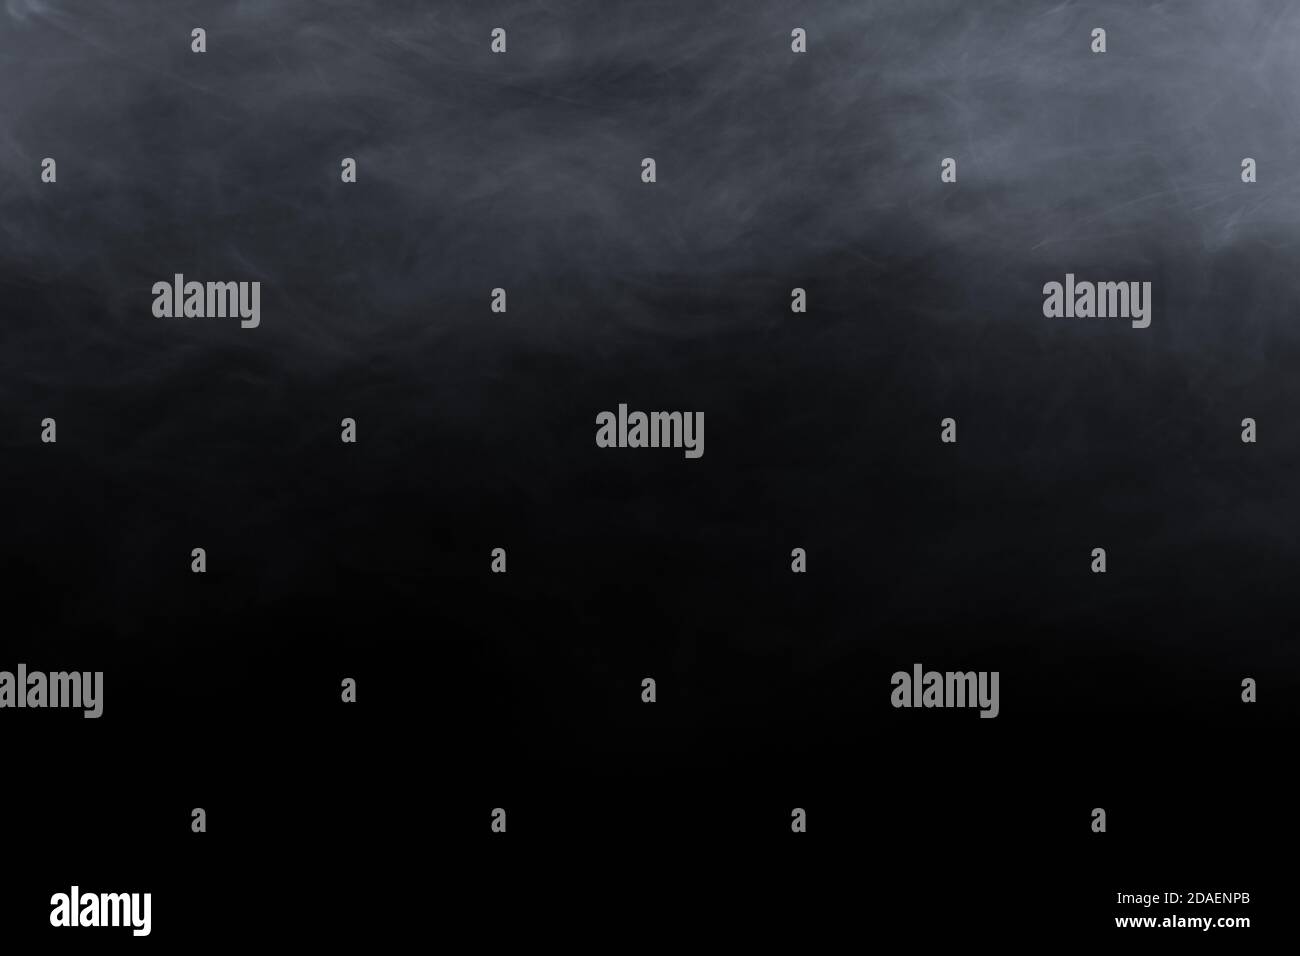 Smoke or fog isolated on white background Stock Photo